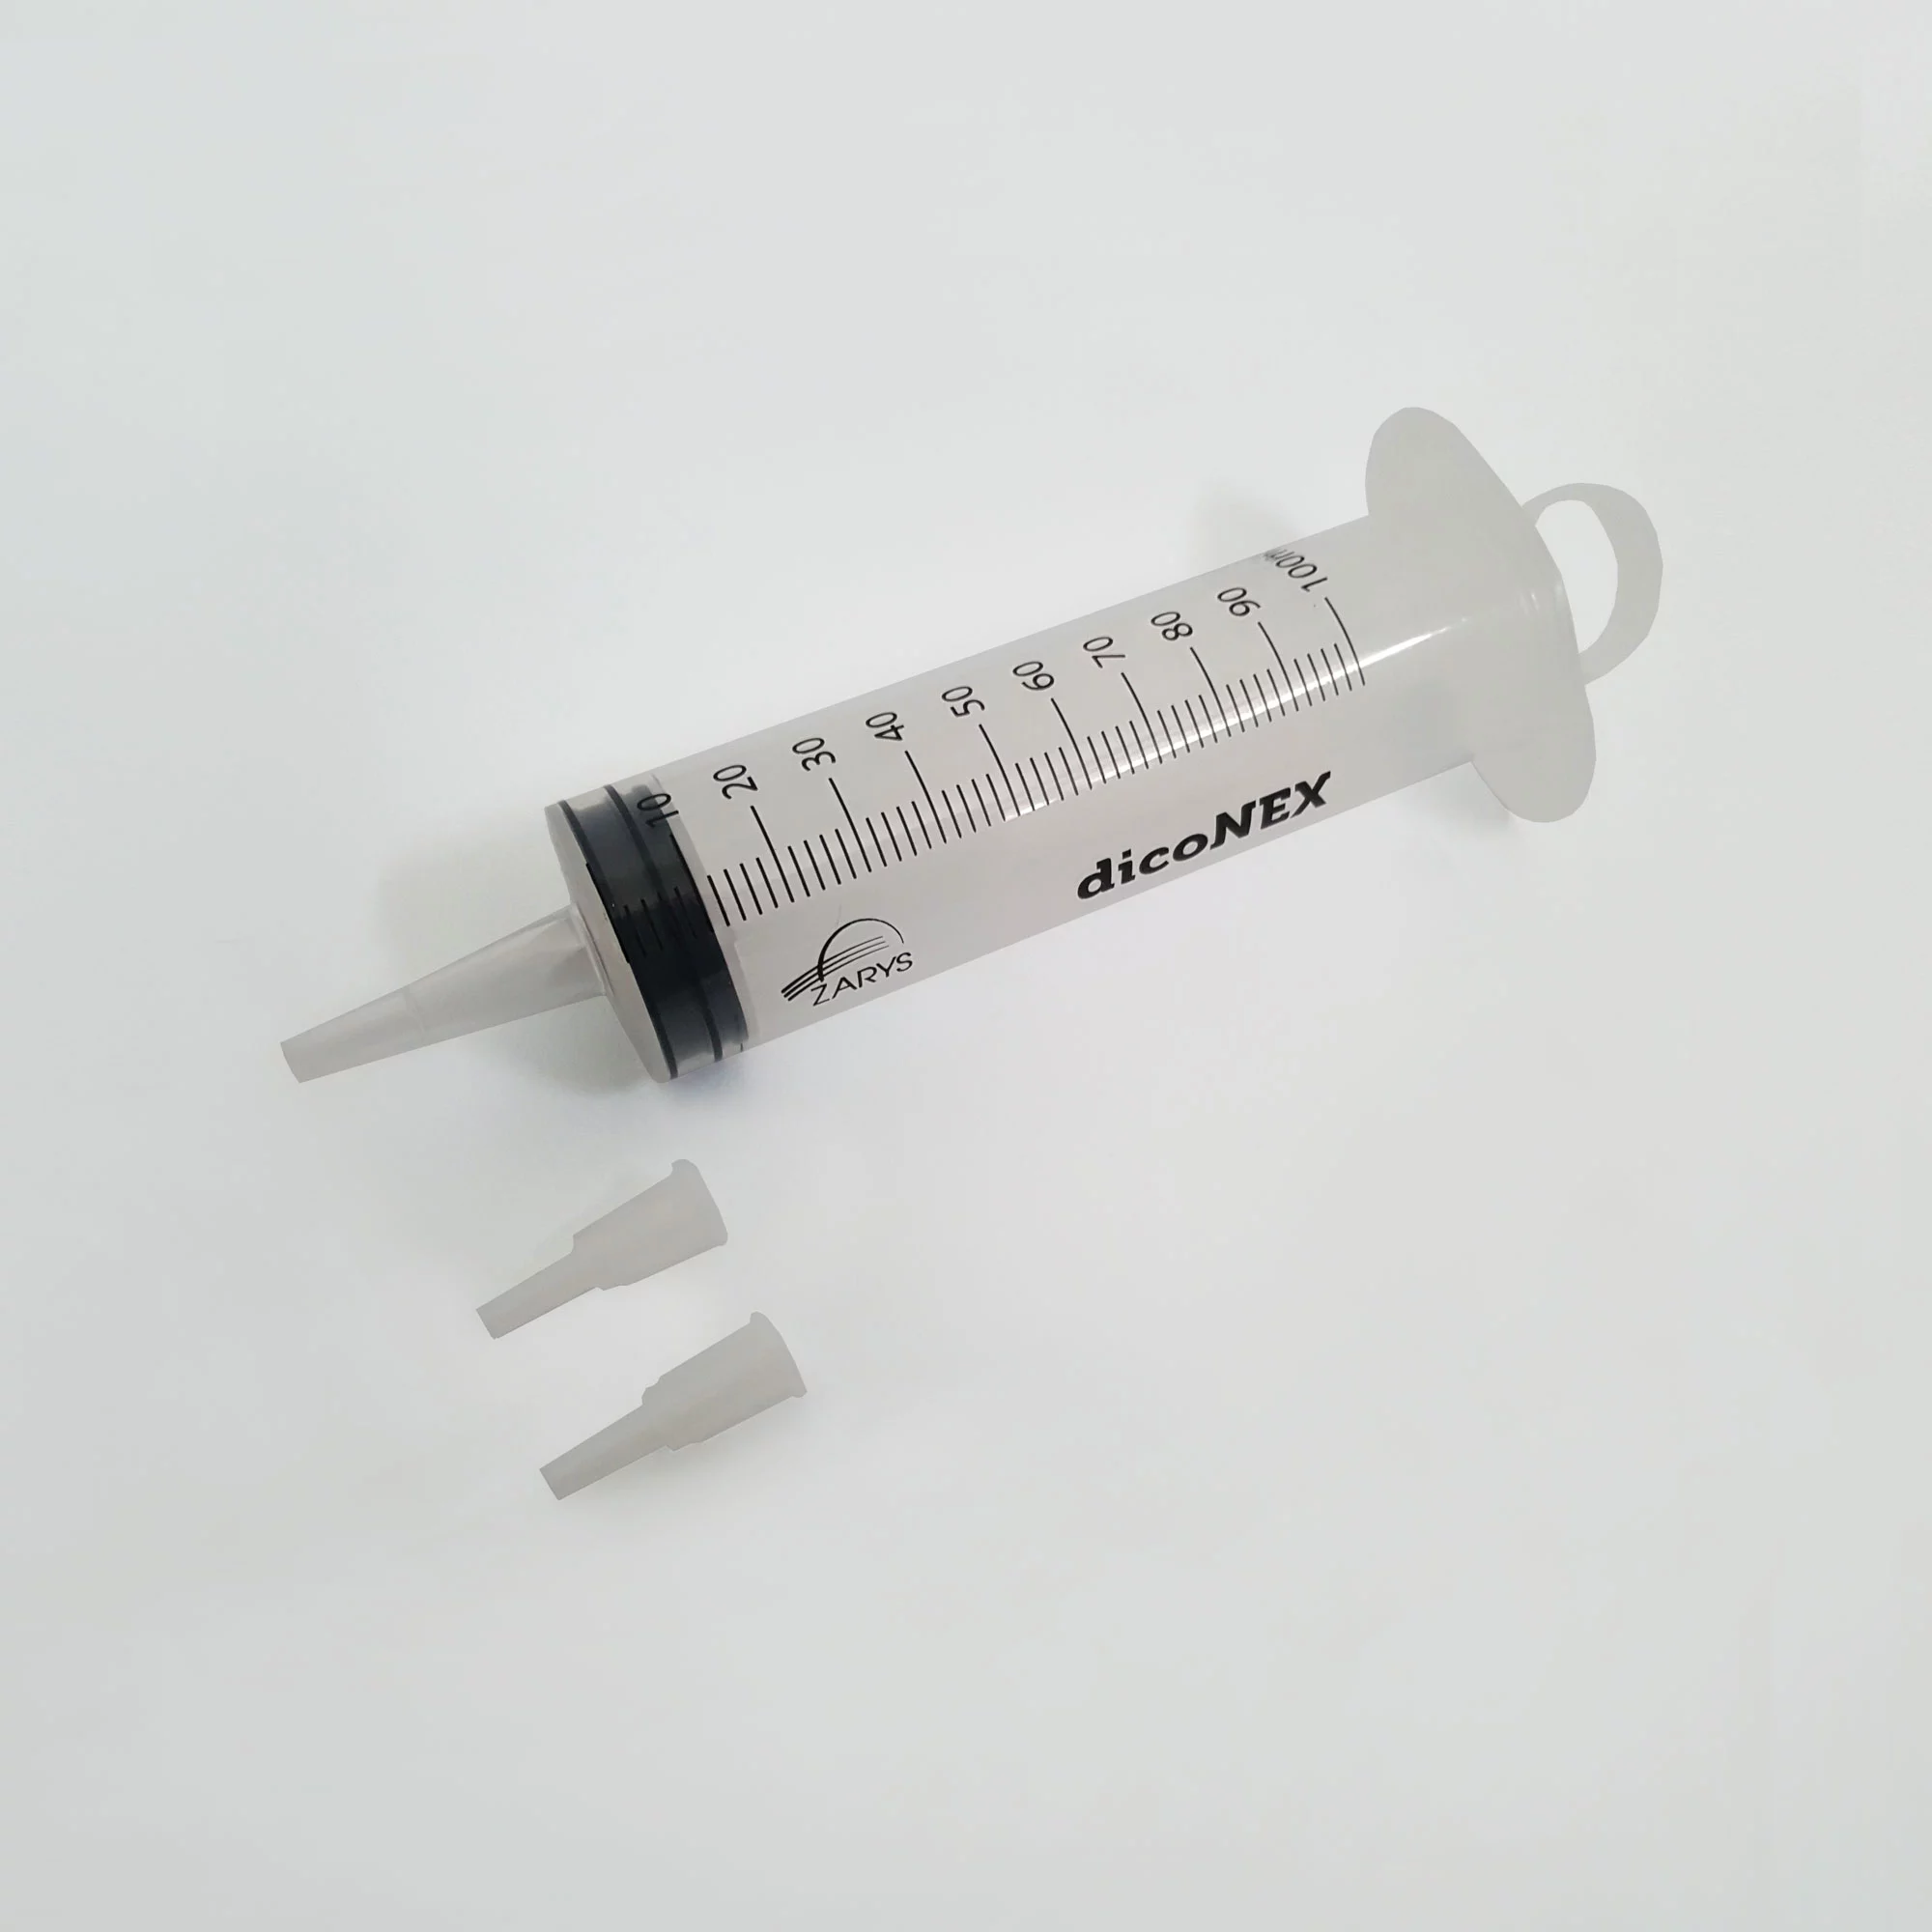 dicoNEX - single use catheter syringe, 3-part